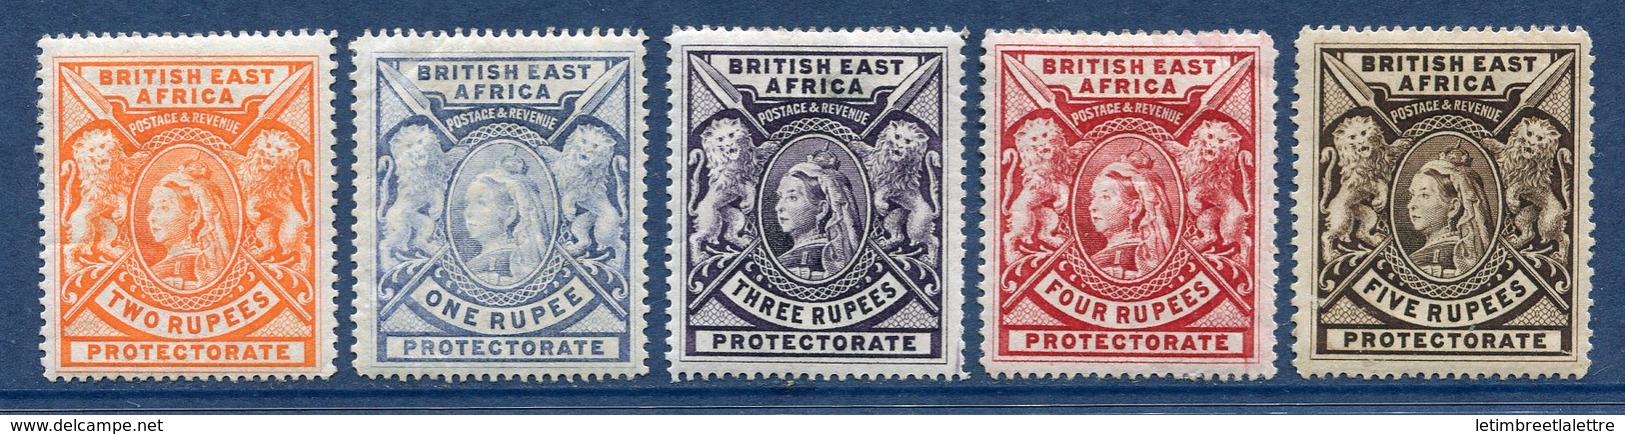 ⭐ Afrique Orientale Britannique - YT N° 76 à 80 * - Neuf Avec Charnière ⭐ - Africa Orientale Britannica